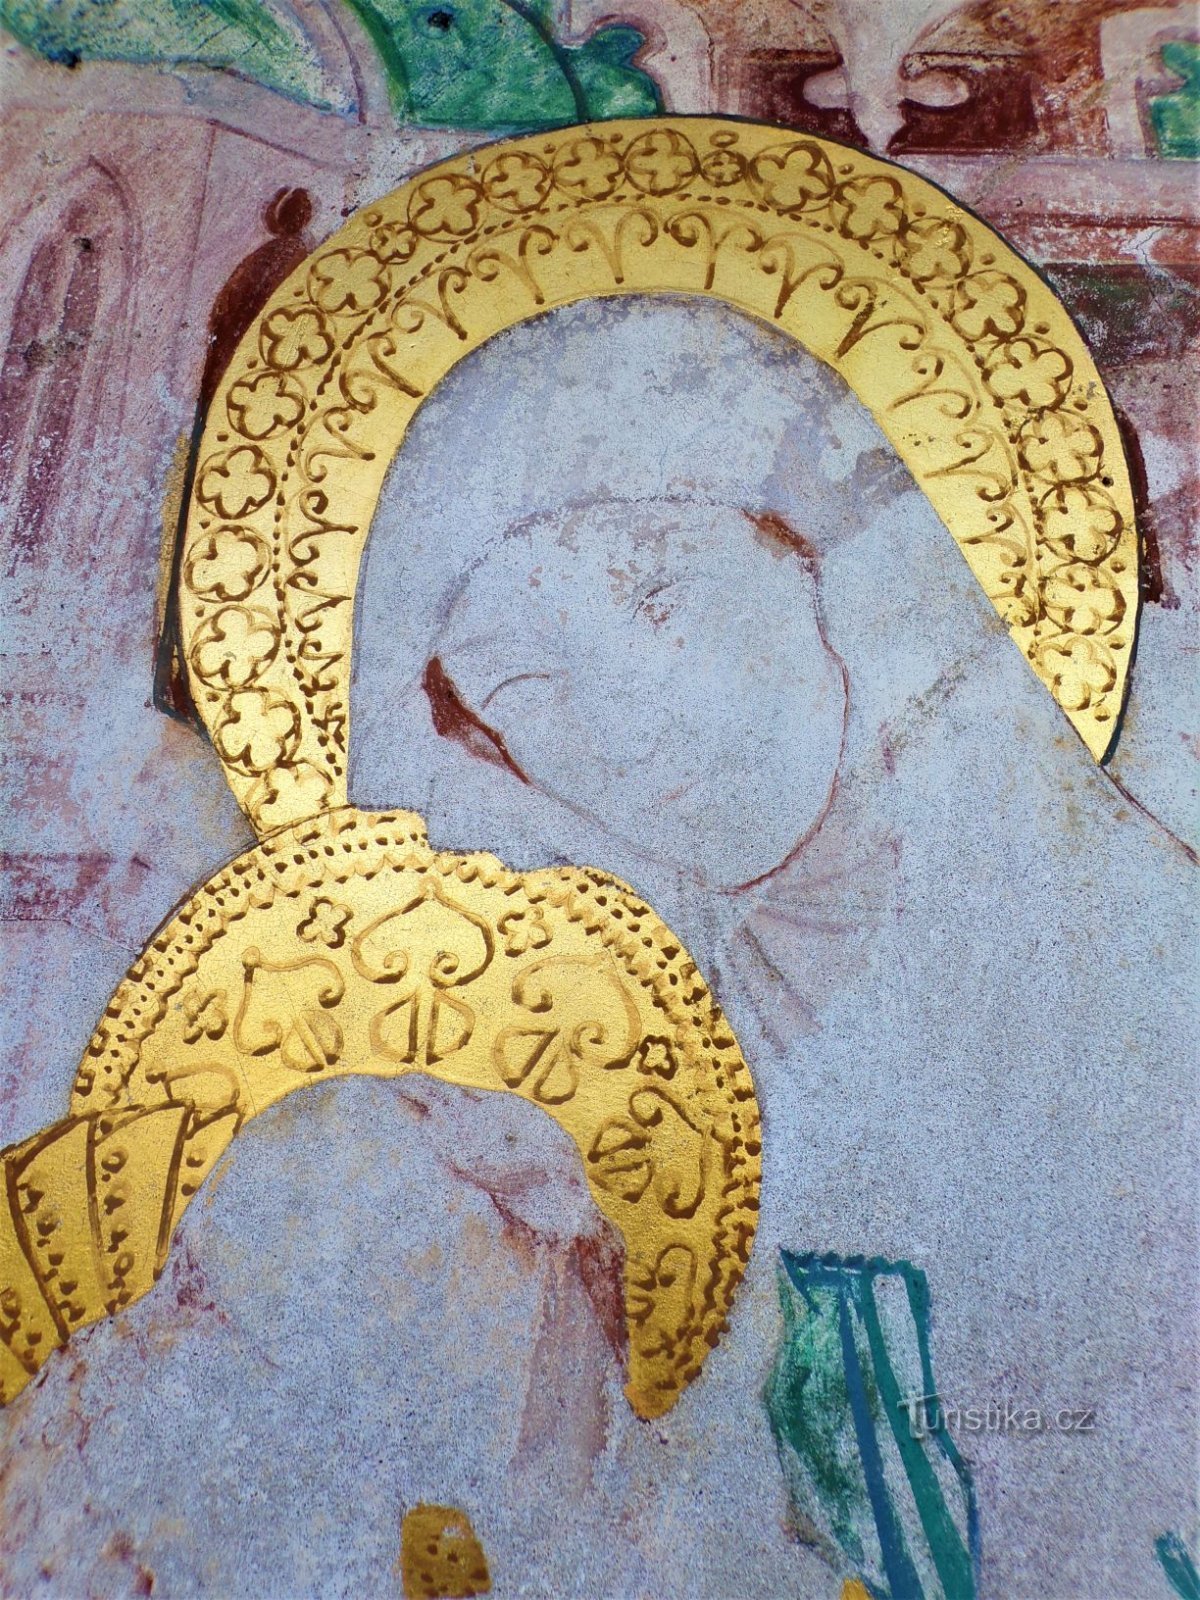 Detalj av St. Anne i målningen i kapellet St. Anny (Dobřenice, 8.5.2021 maj XNUMX)